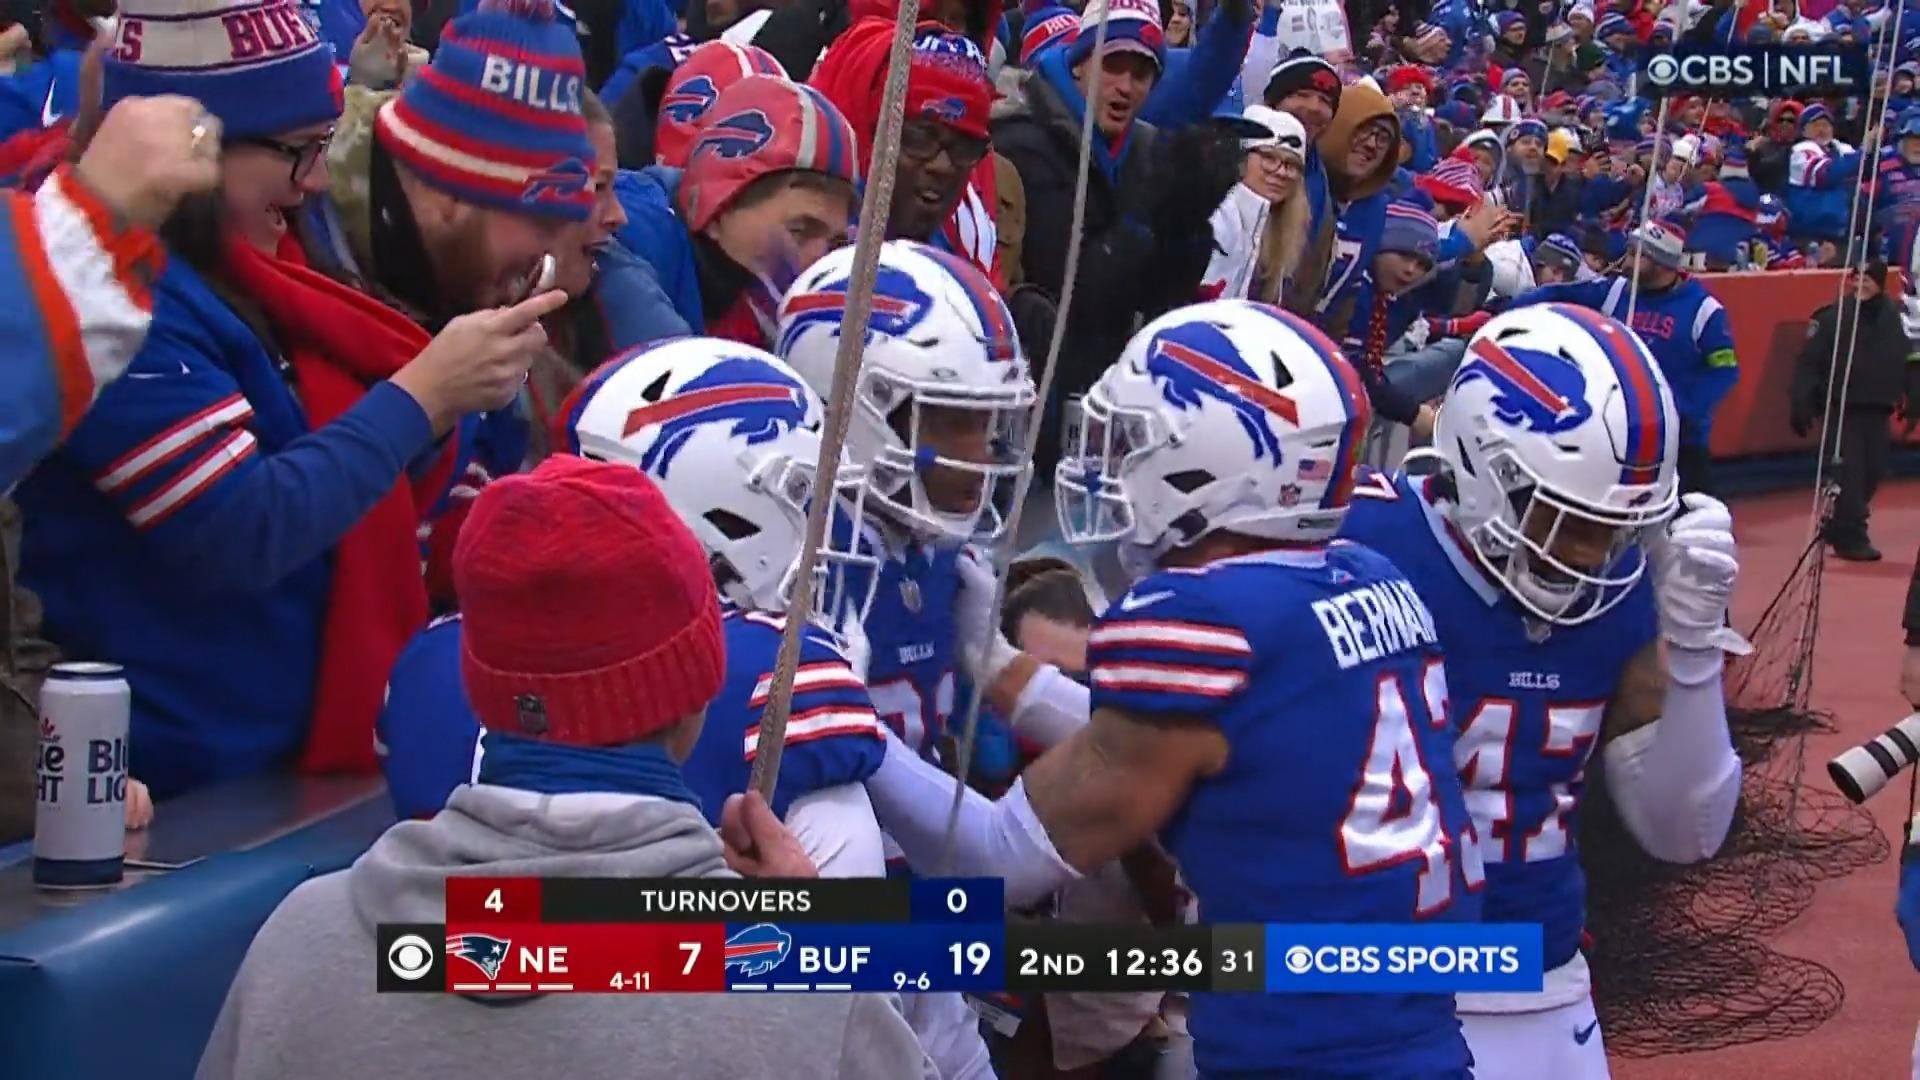 La caída de los Bills hizo que el estadio se sintiera absolutamente aterrador, ¡qué carrera!